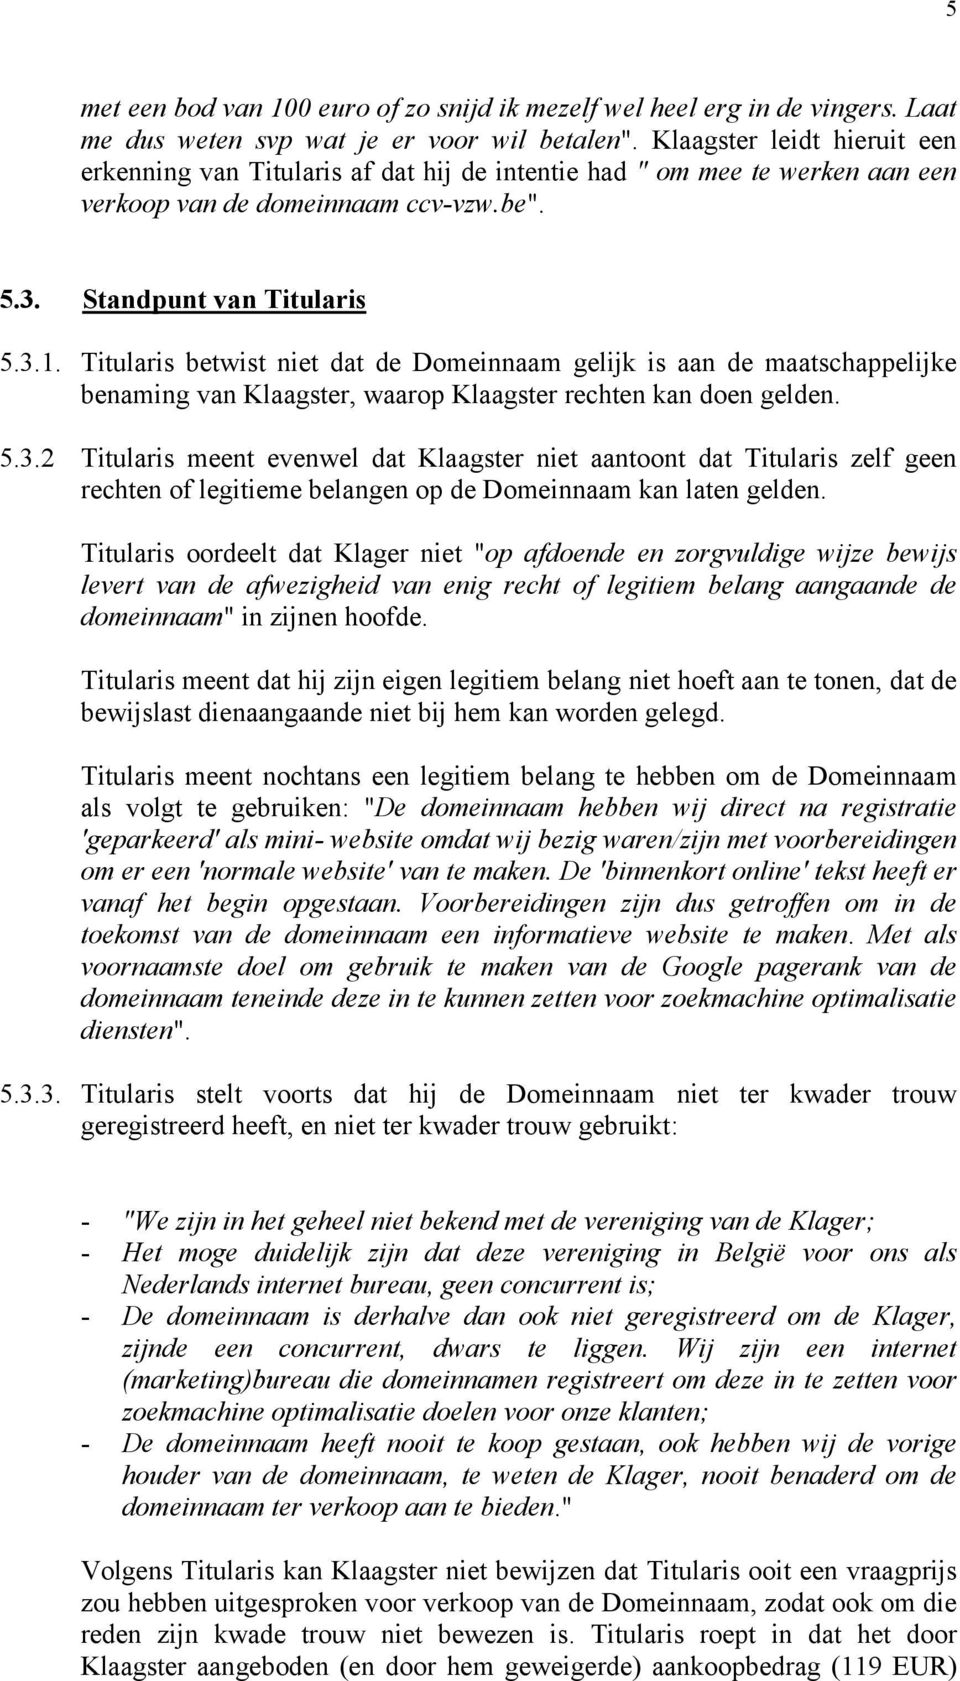 Titularis betwist niet dat de Domeinnaam gelijk is aan de maatschappelijke benaming van Klaagster, waarop Klaagster rechten kan doen gelden. 5.3.